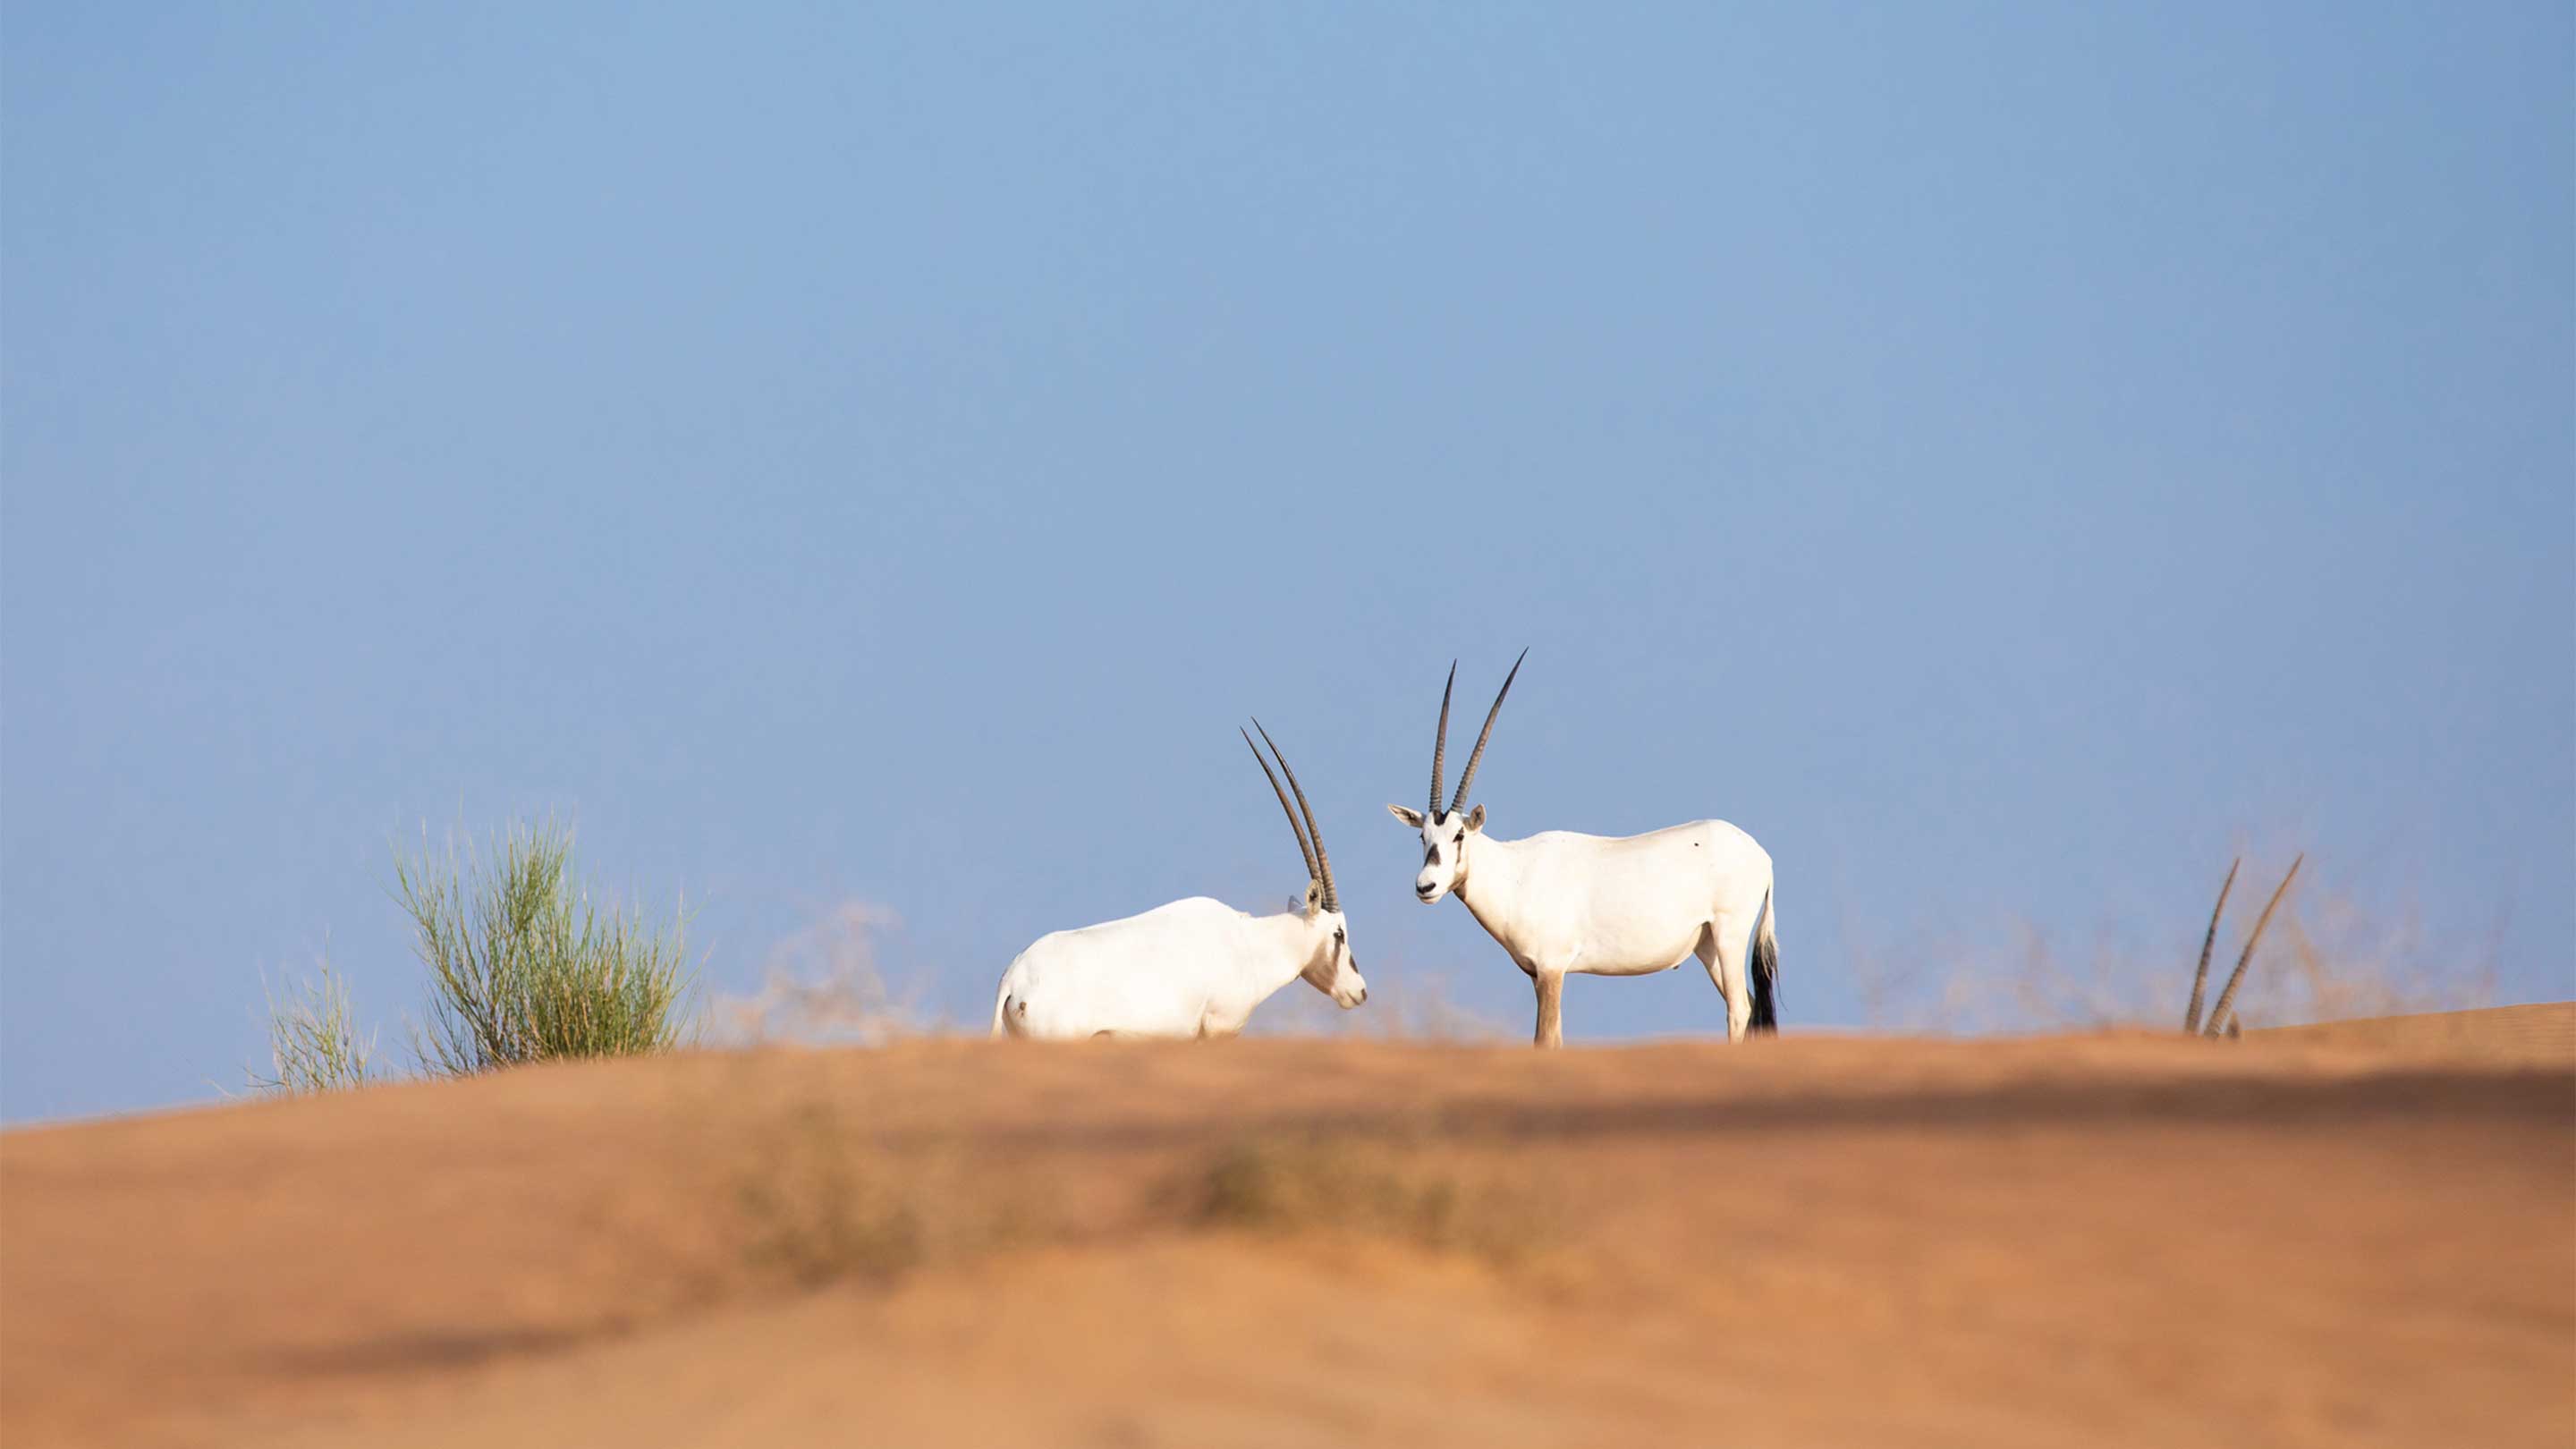 16-9 Geheimnis - Kopie des arabischen Oryx